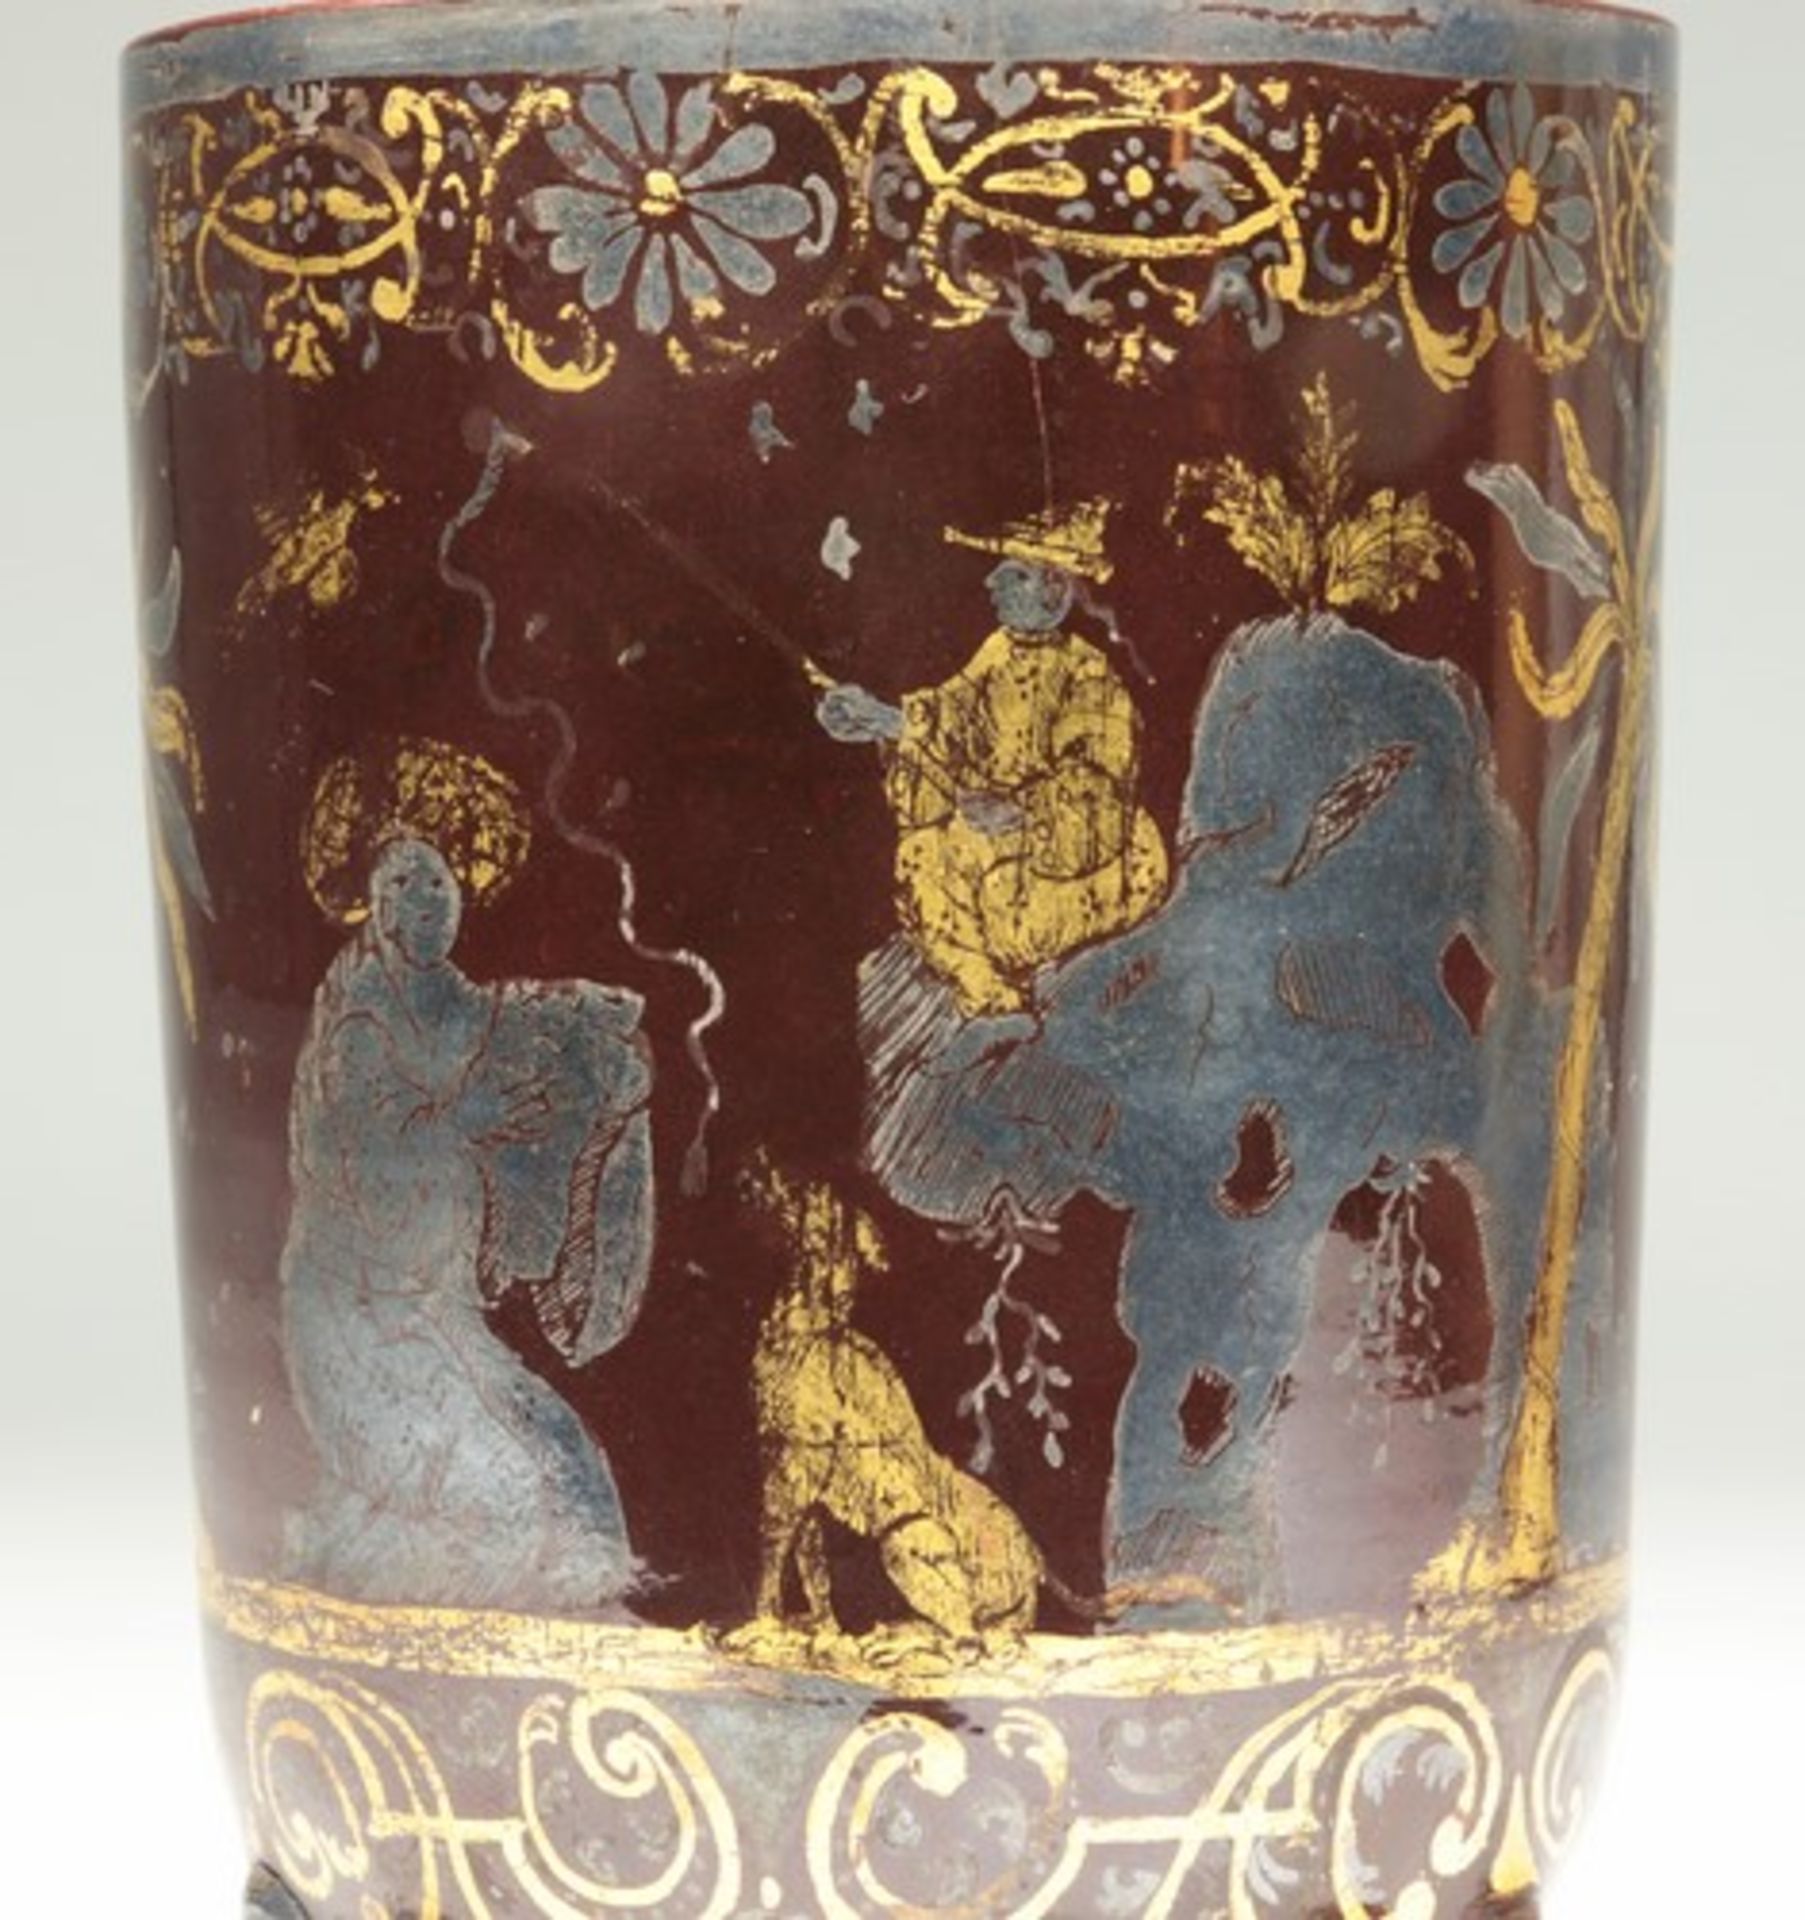 Fayence - Becher1728-1744, Bayreuth, Knöllerperiode, roter Scherben, kaffeebraune Glasur, seltener - Bild 10 aus 12